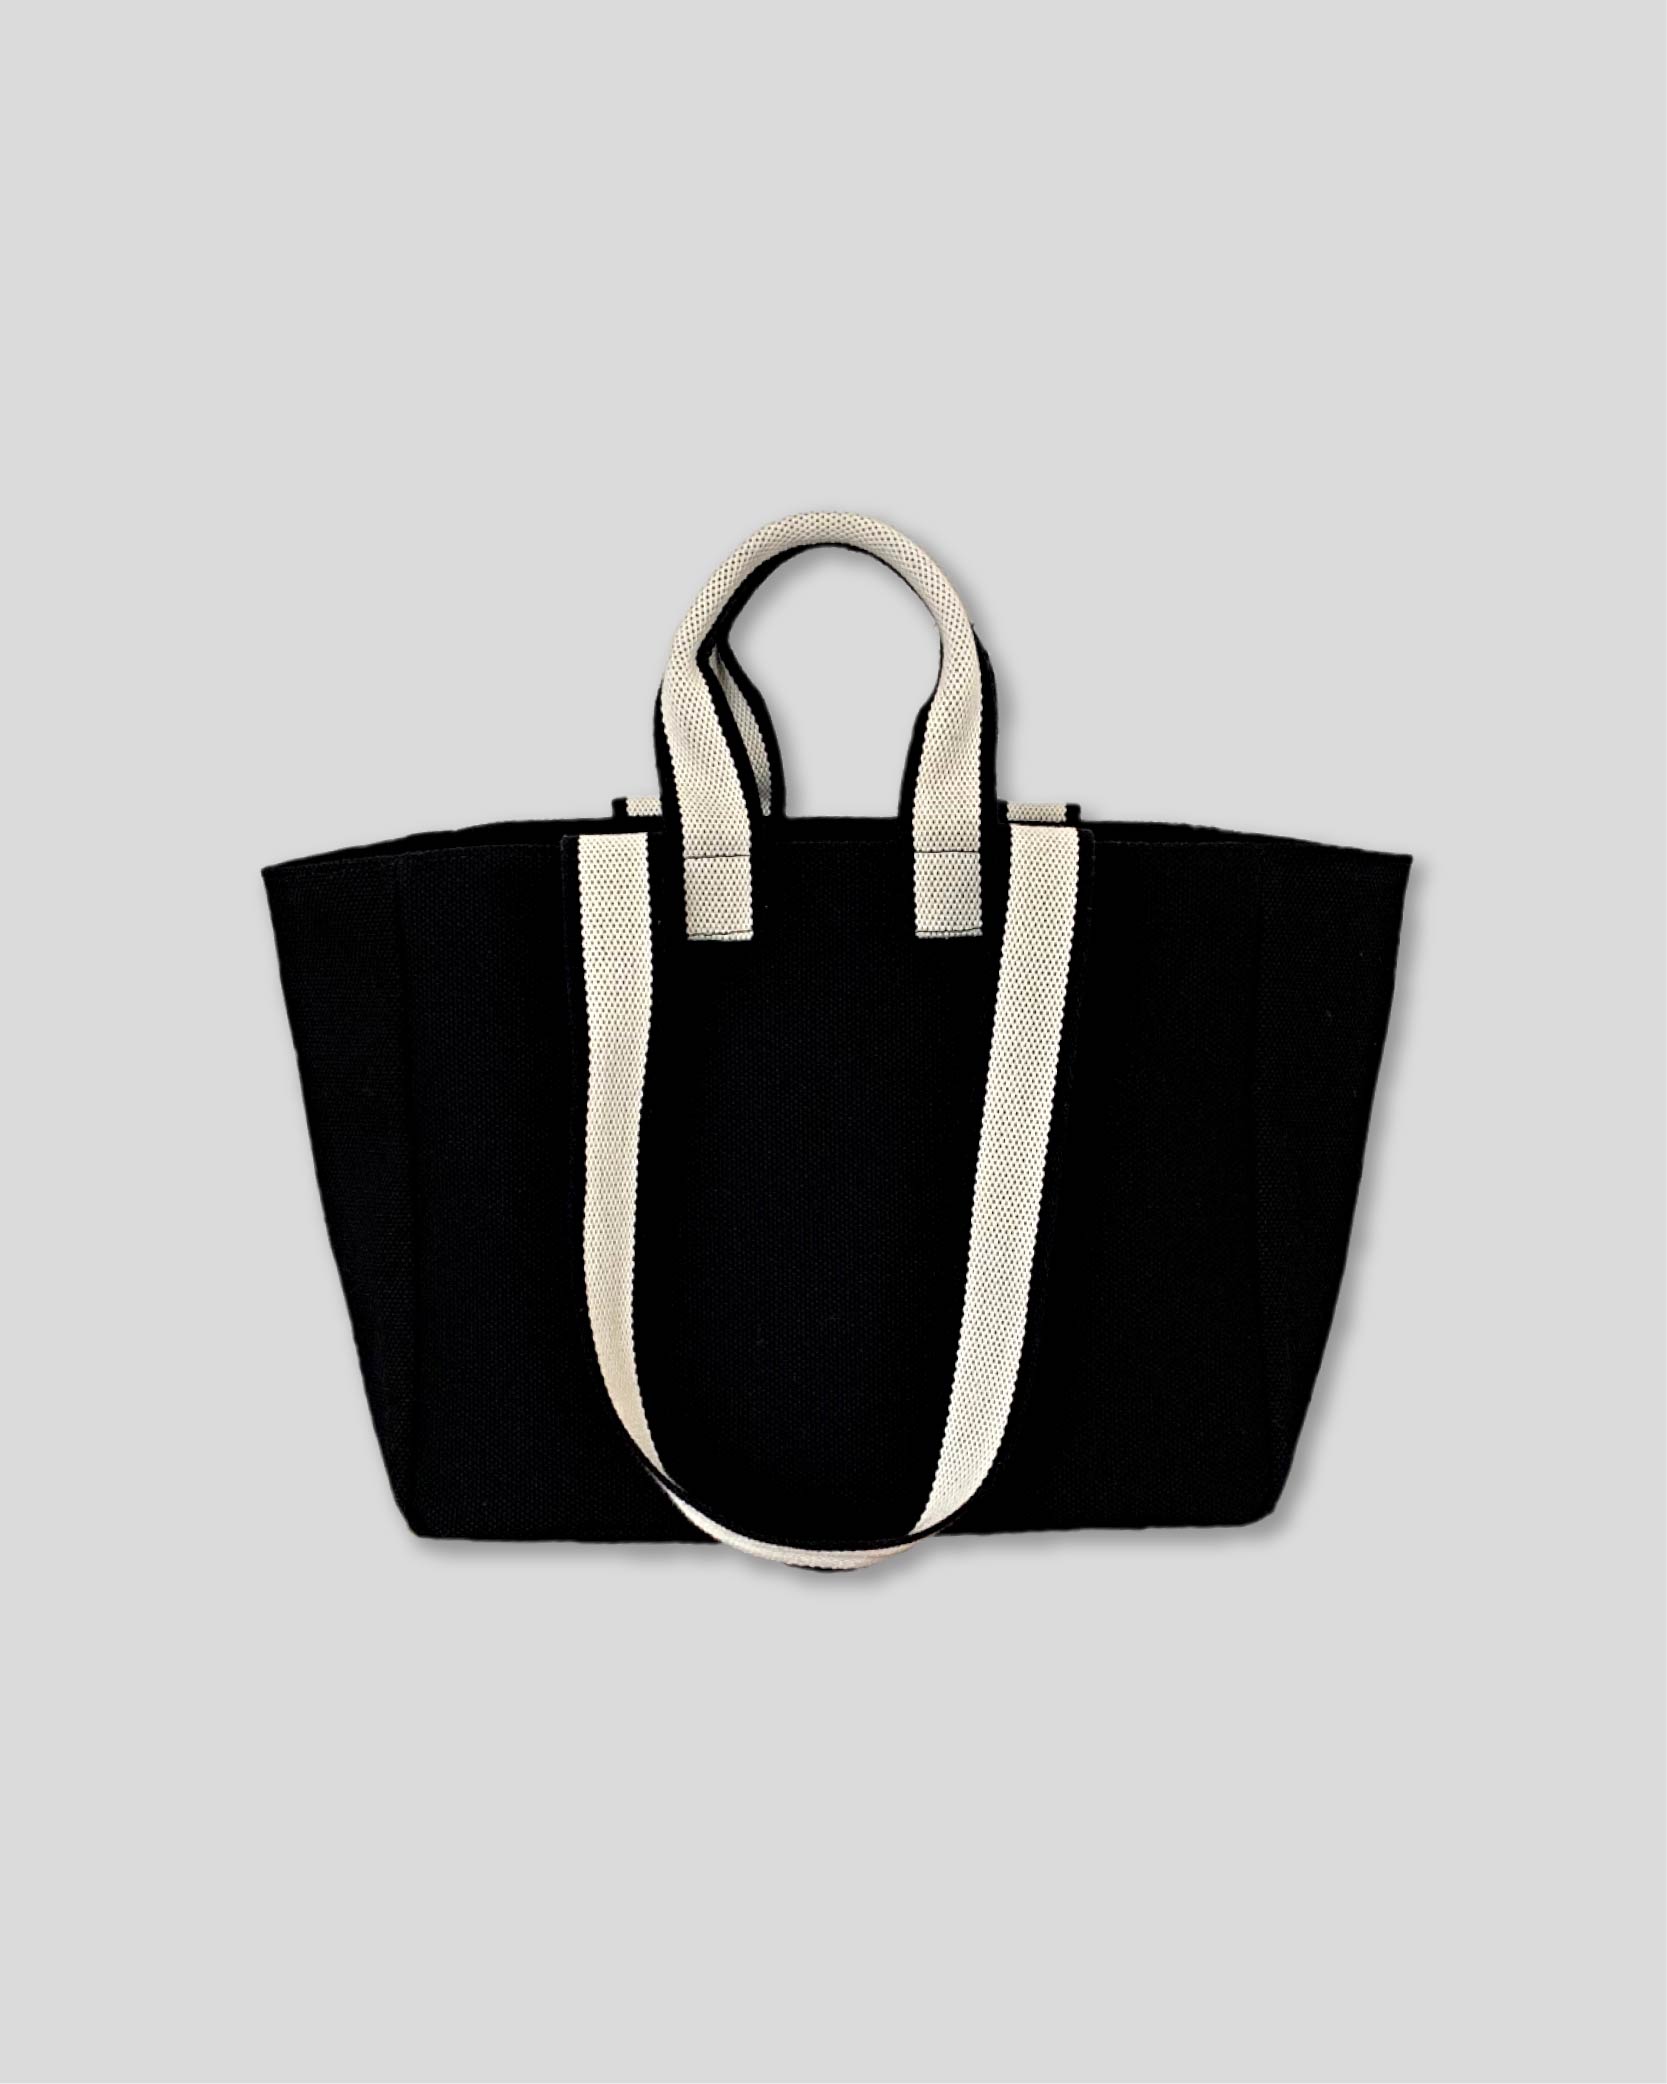 언폴드,unfold,에코백,파우치,천가방,친환경가방,Two-tone strap bag (black)